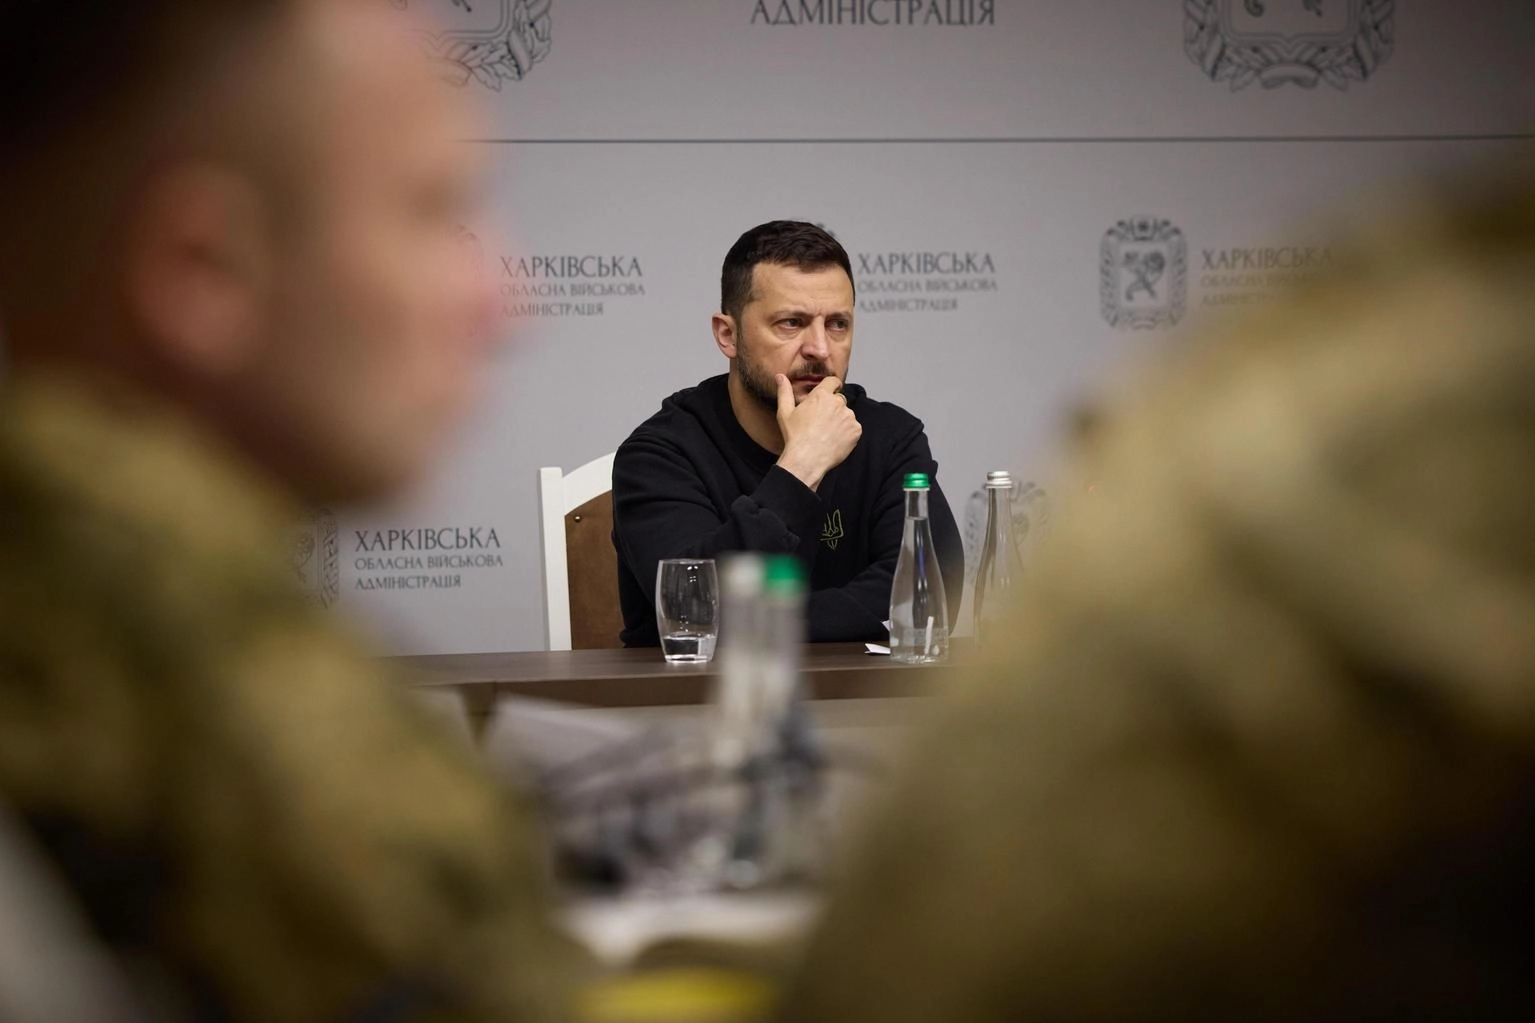 Zelensky, attacco su Kharkiv parte di un'offensiva più ampia